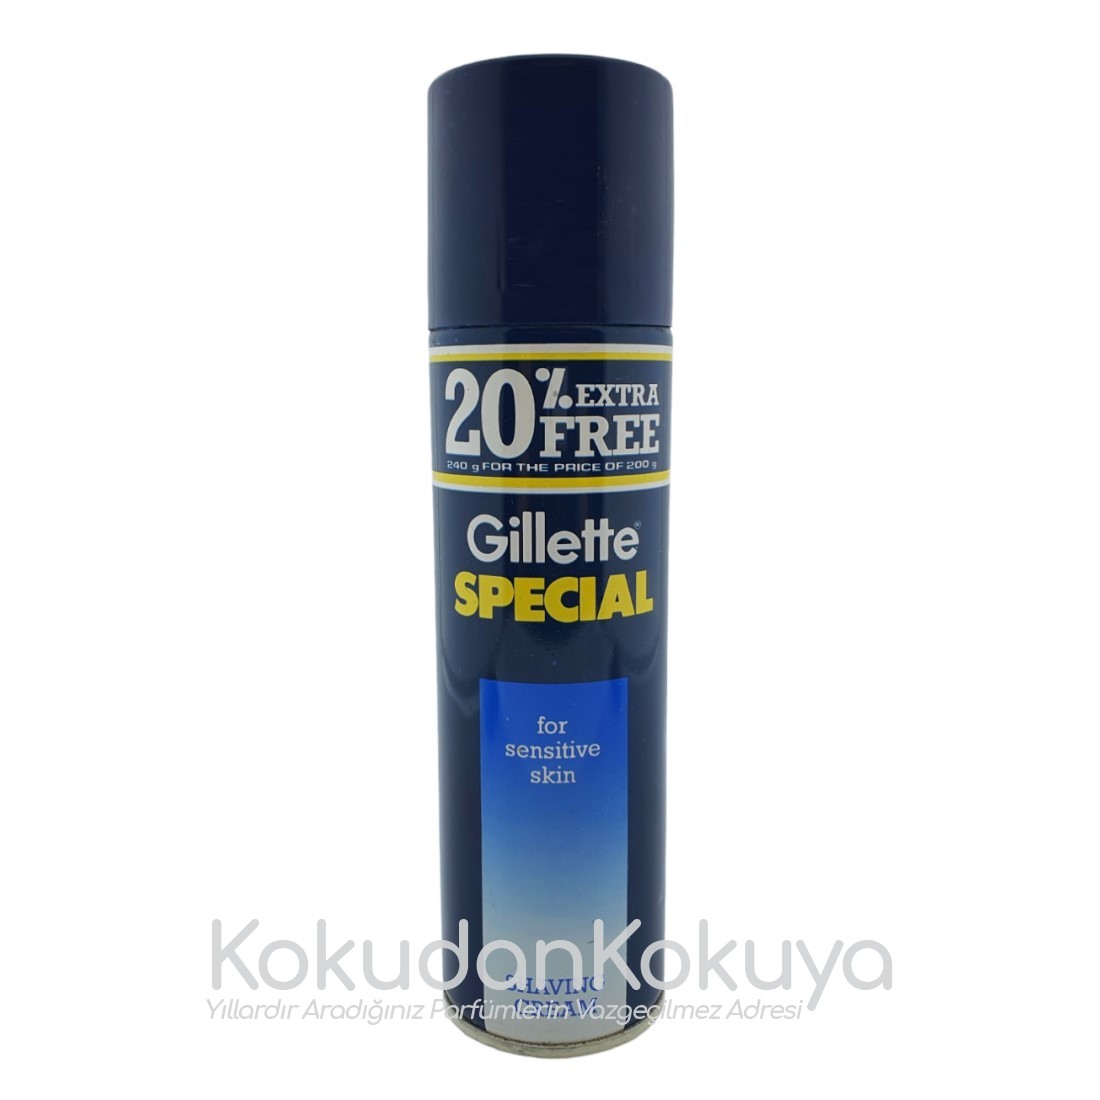 GILLETTE Gillette Series Erkek Cilt Bakım Ürünleri Erkek 240ml Traş Köpüğü Dökme 